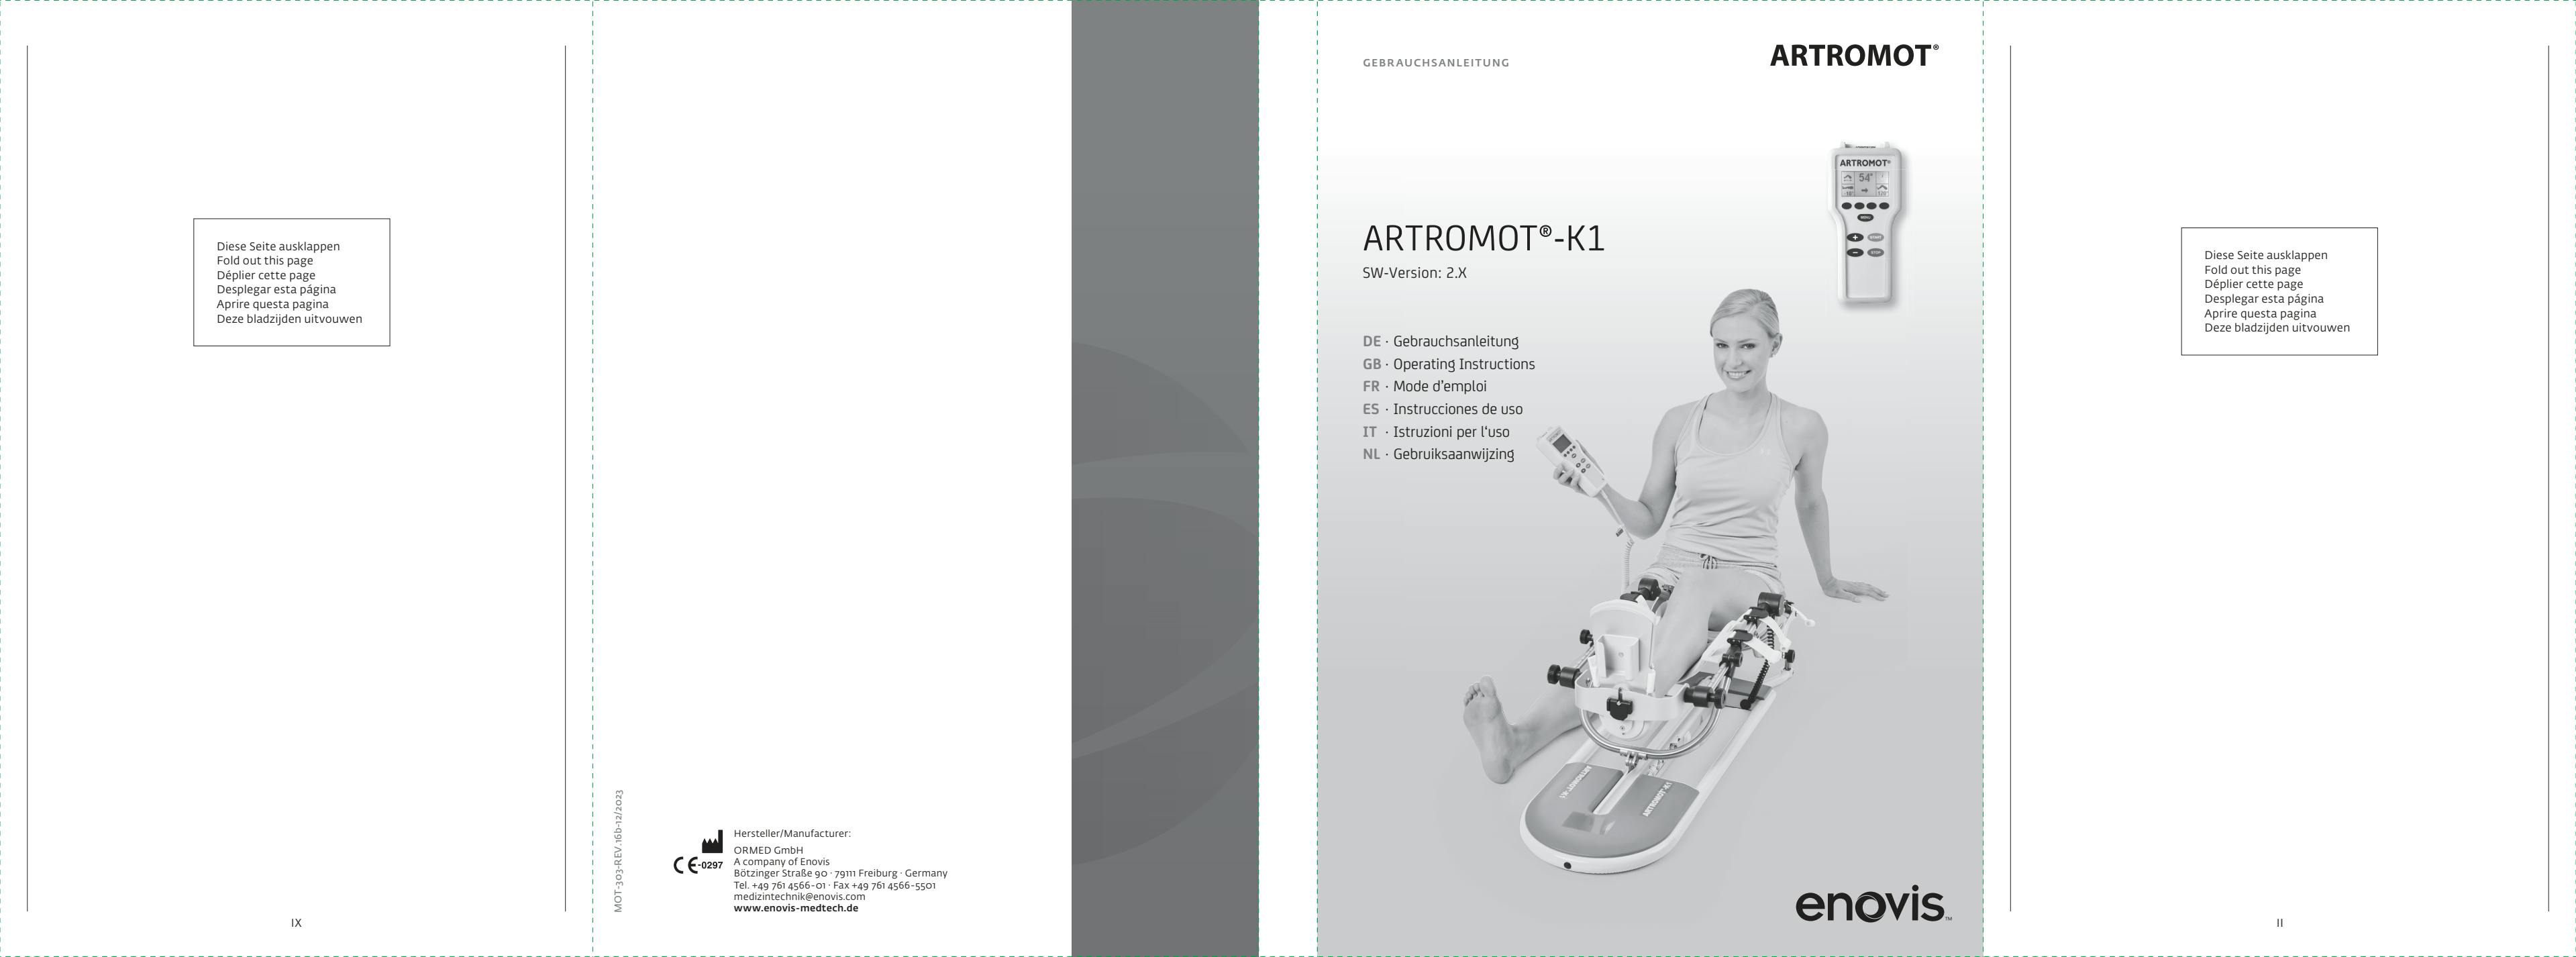 Gebrauchsanleitung_ARTROMOT-K1_MOT-303-REV.16-11-2021.pdf